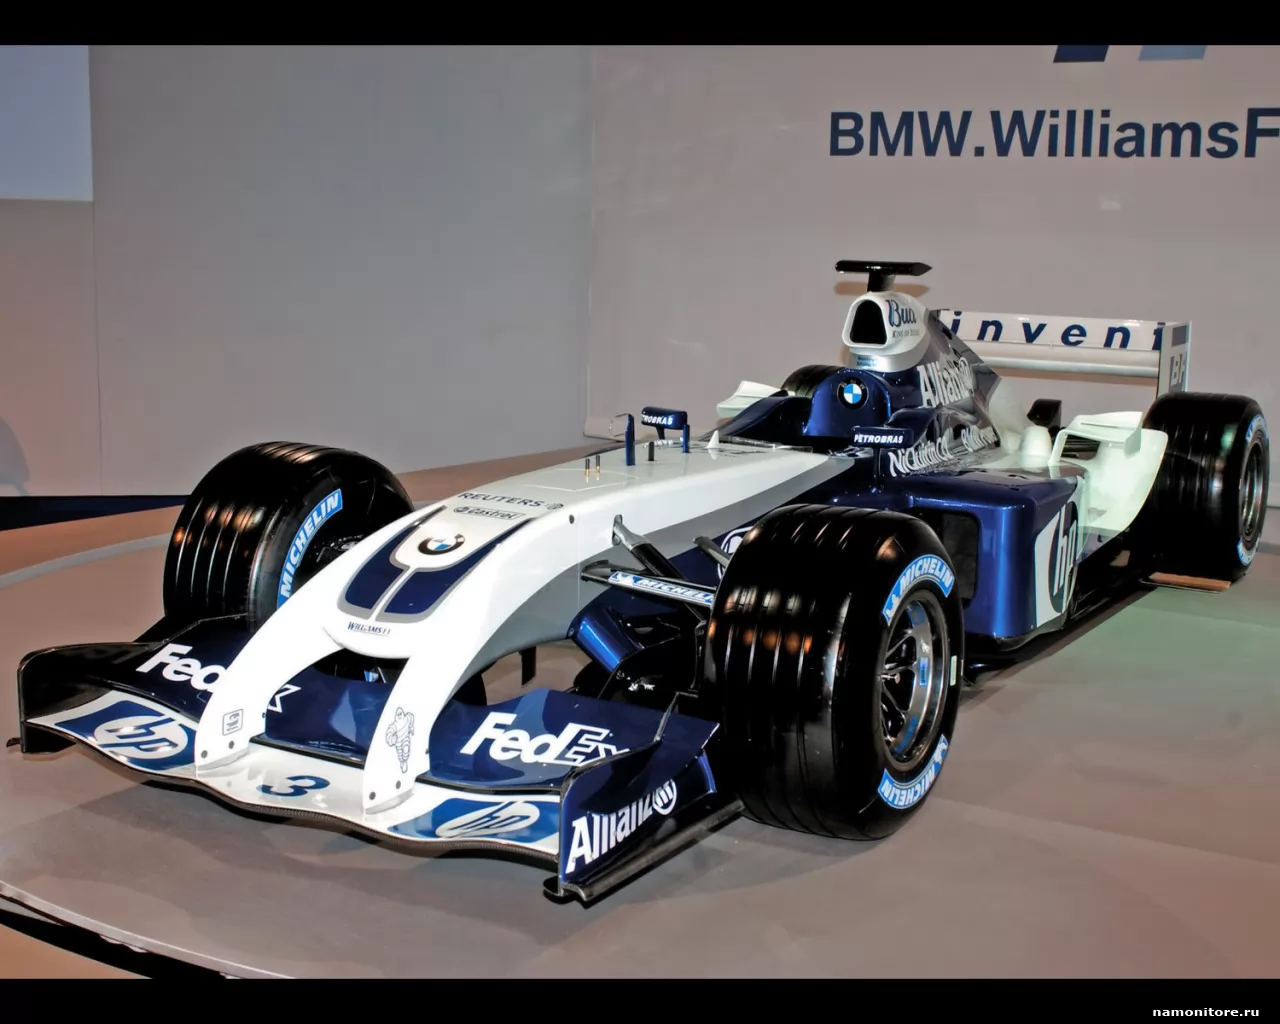  BMW Williams f1-Fw26, BMW, Formula 1, ,  ,  